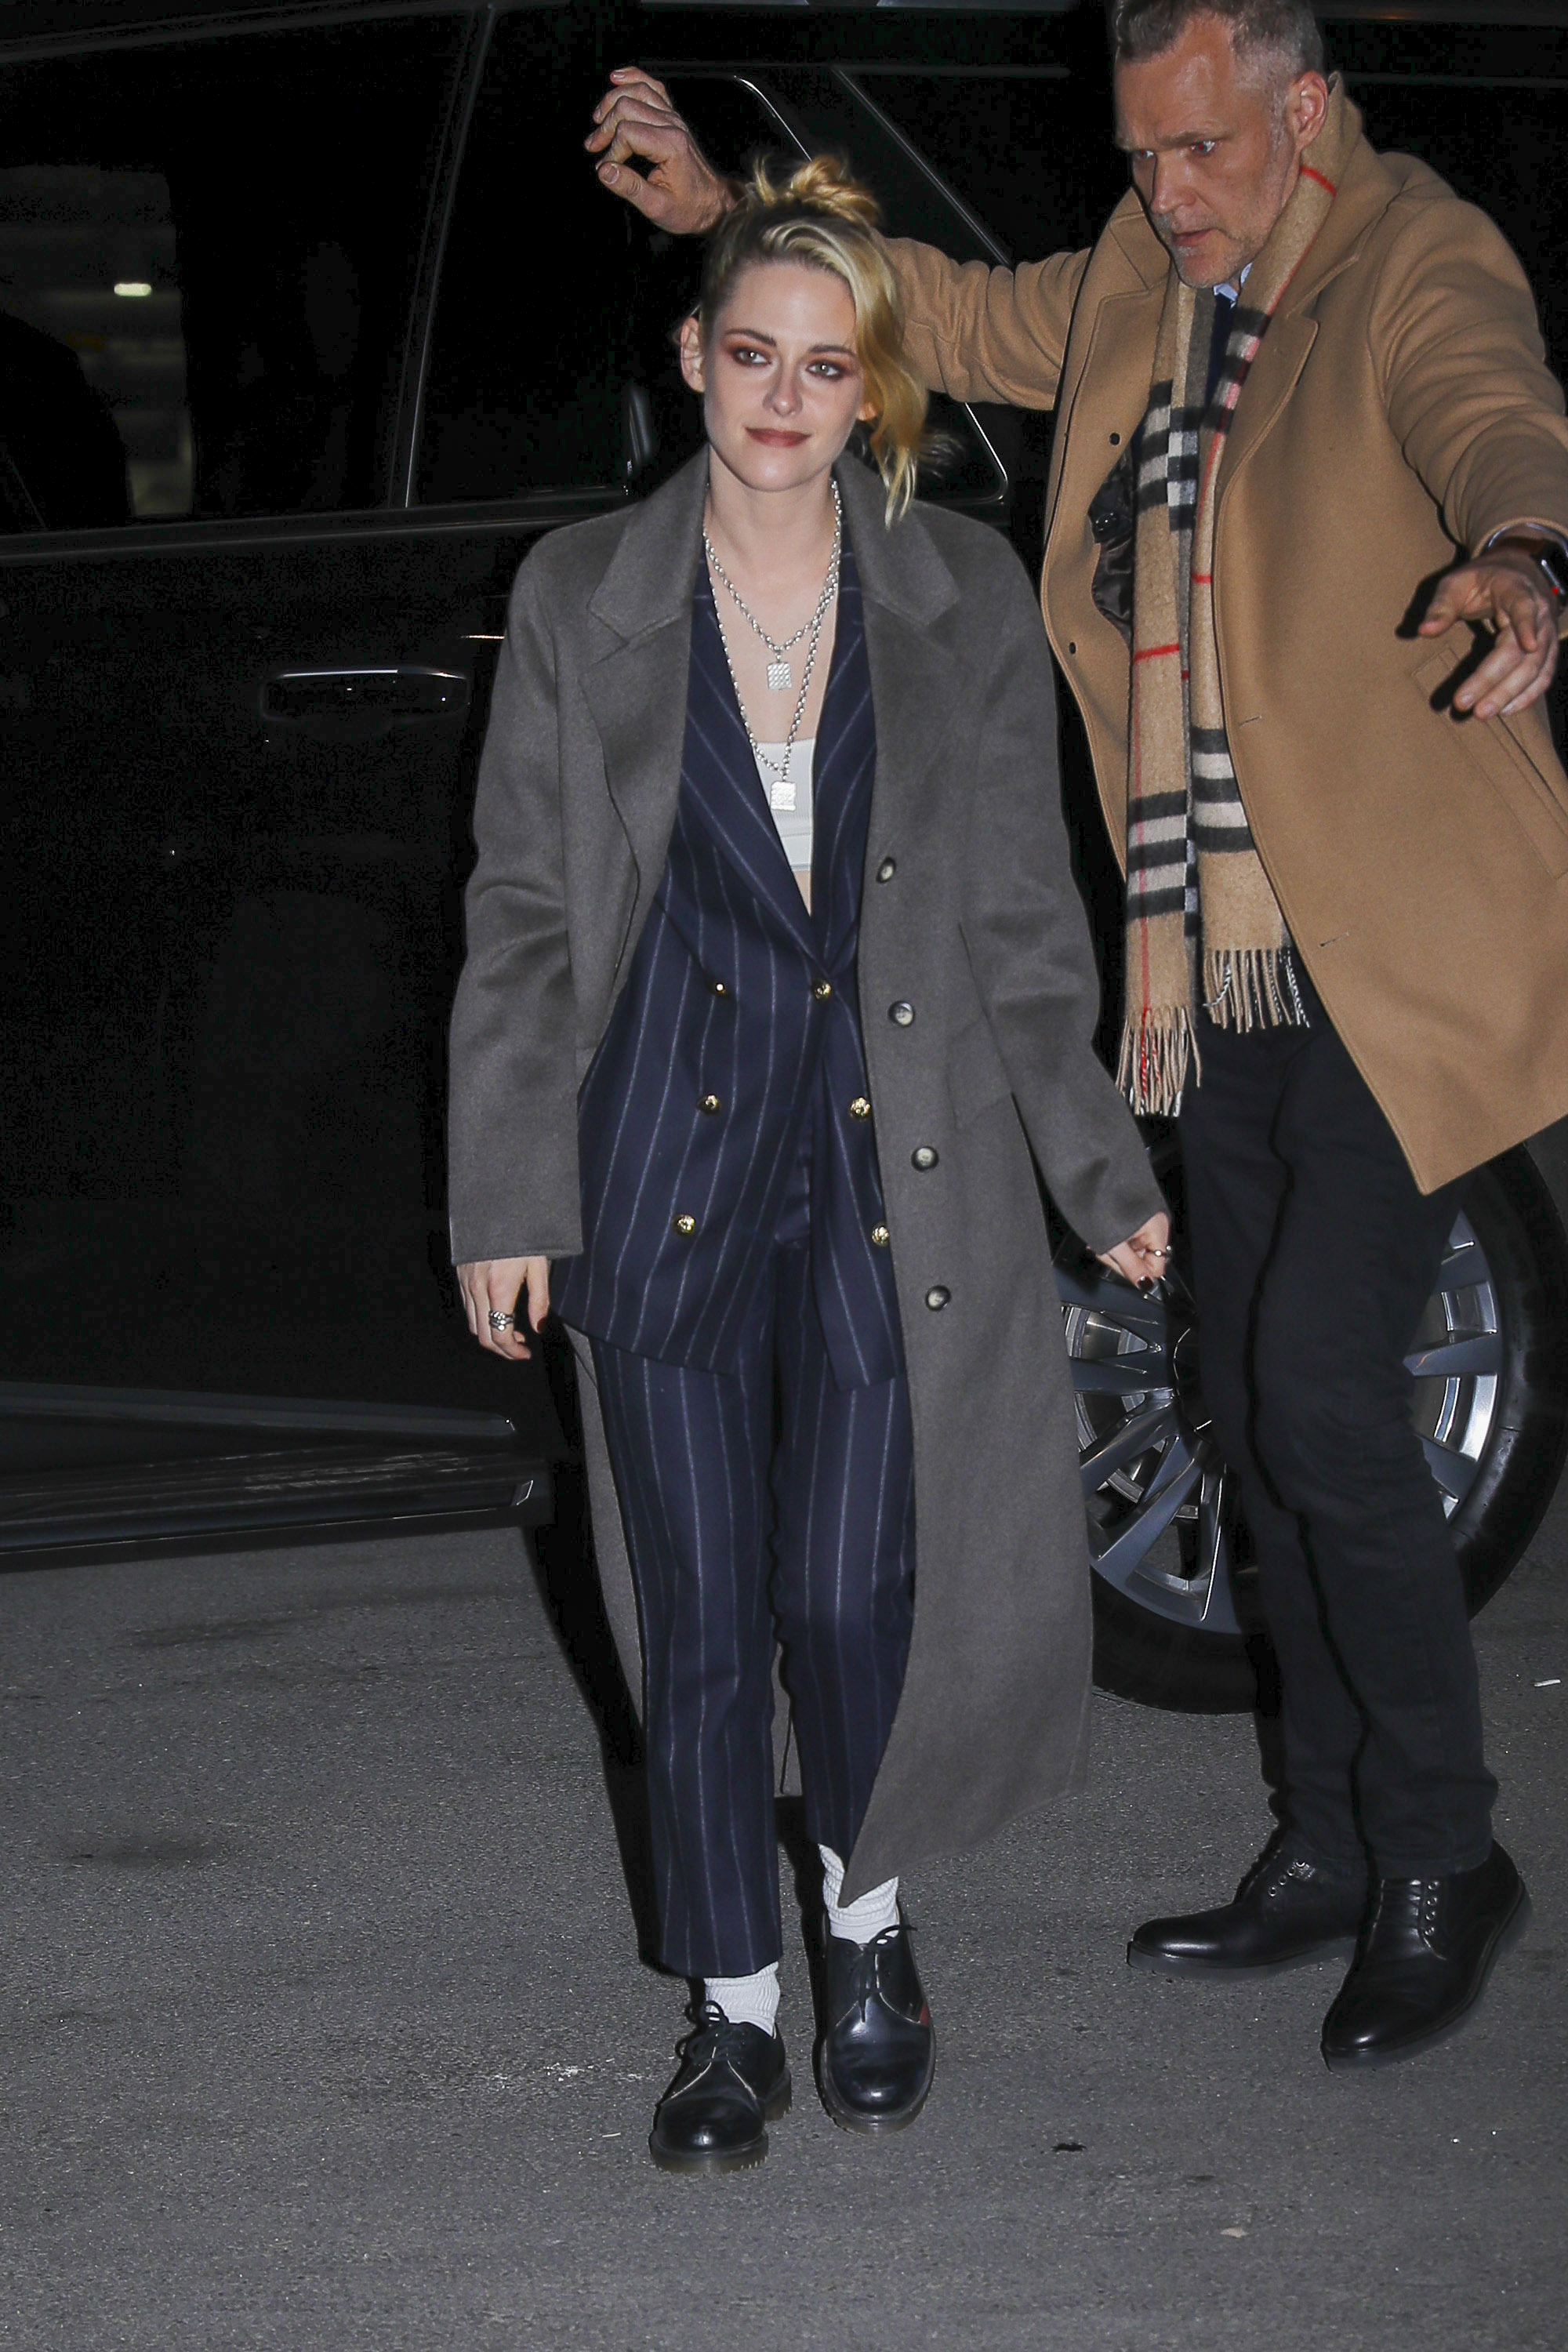 Kristen Stewart disfrutó de la noche de Nueva York. La actriz fue fotografiada cuando abandonaba el hotel en el que se hospeda por estos días y se dirigía a un exclusivo restaurante. Lució un conjunto de saco y pantalón negro a rayas con botones dorados, camisa blanca y un tapado gris